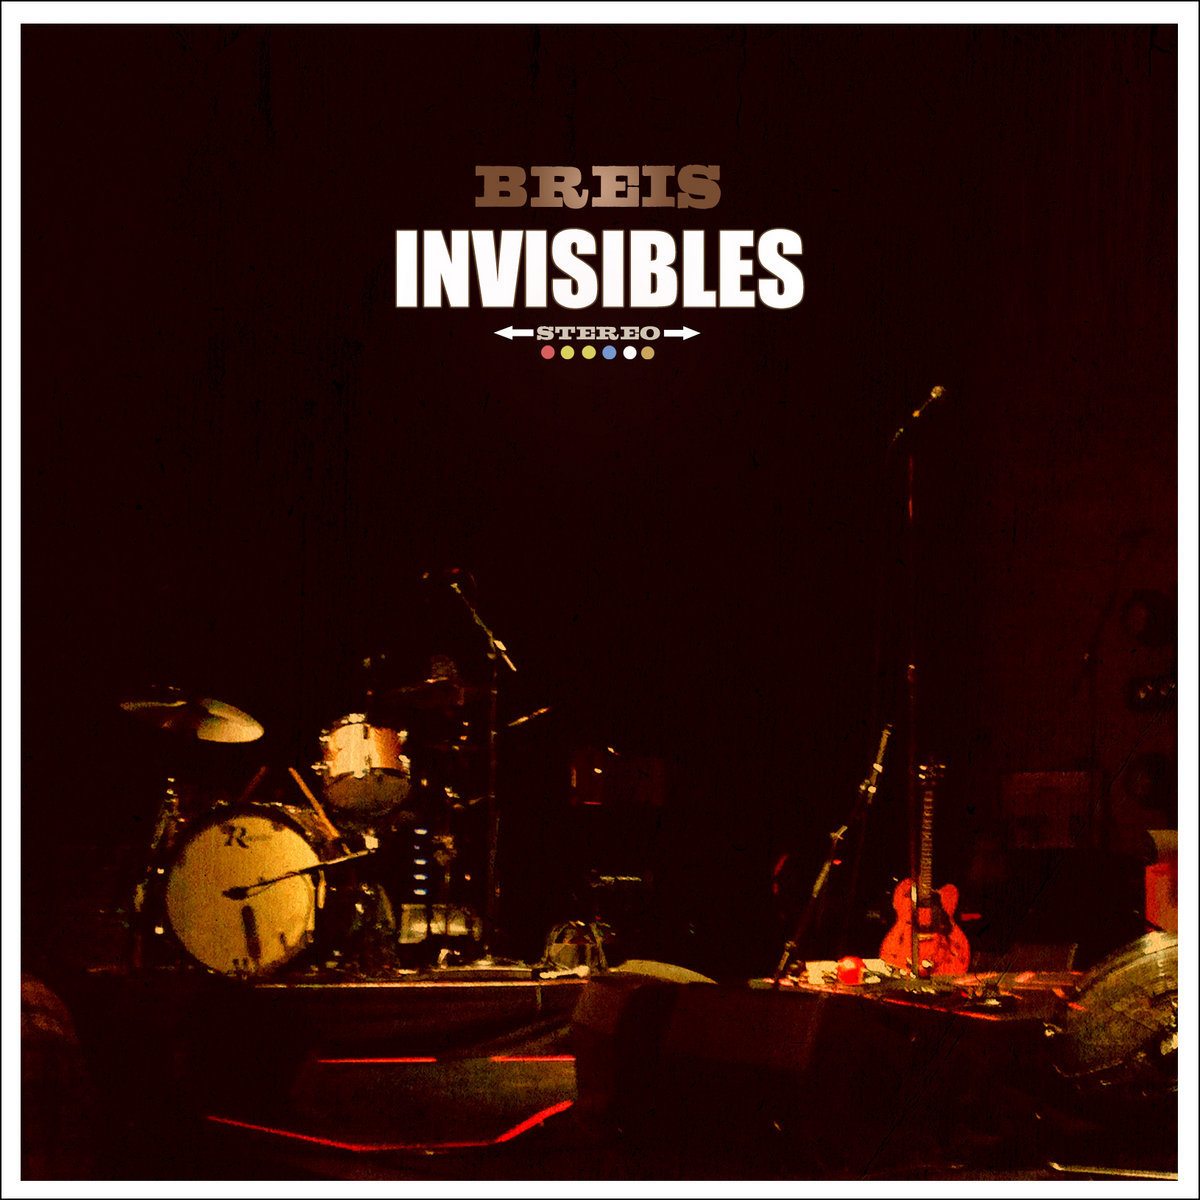 imagen 4 de Manolo Breis recupera una canción de hace siete años para visibilizar lo invisible: los músicos y la música.